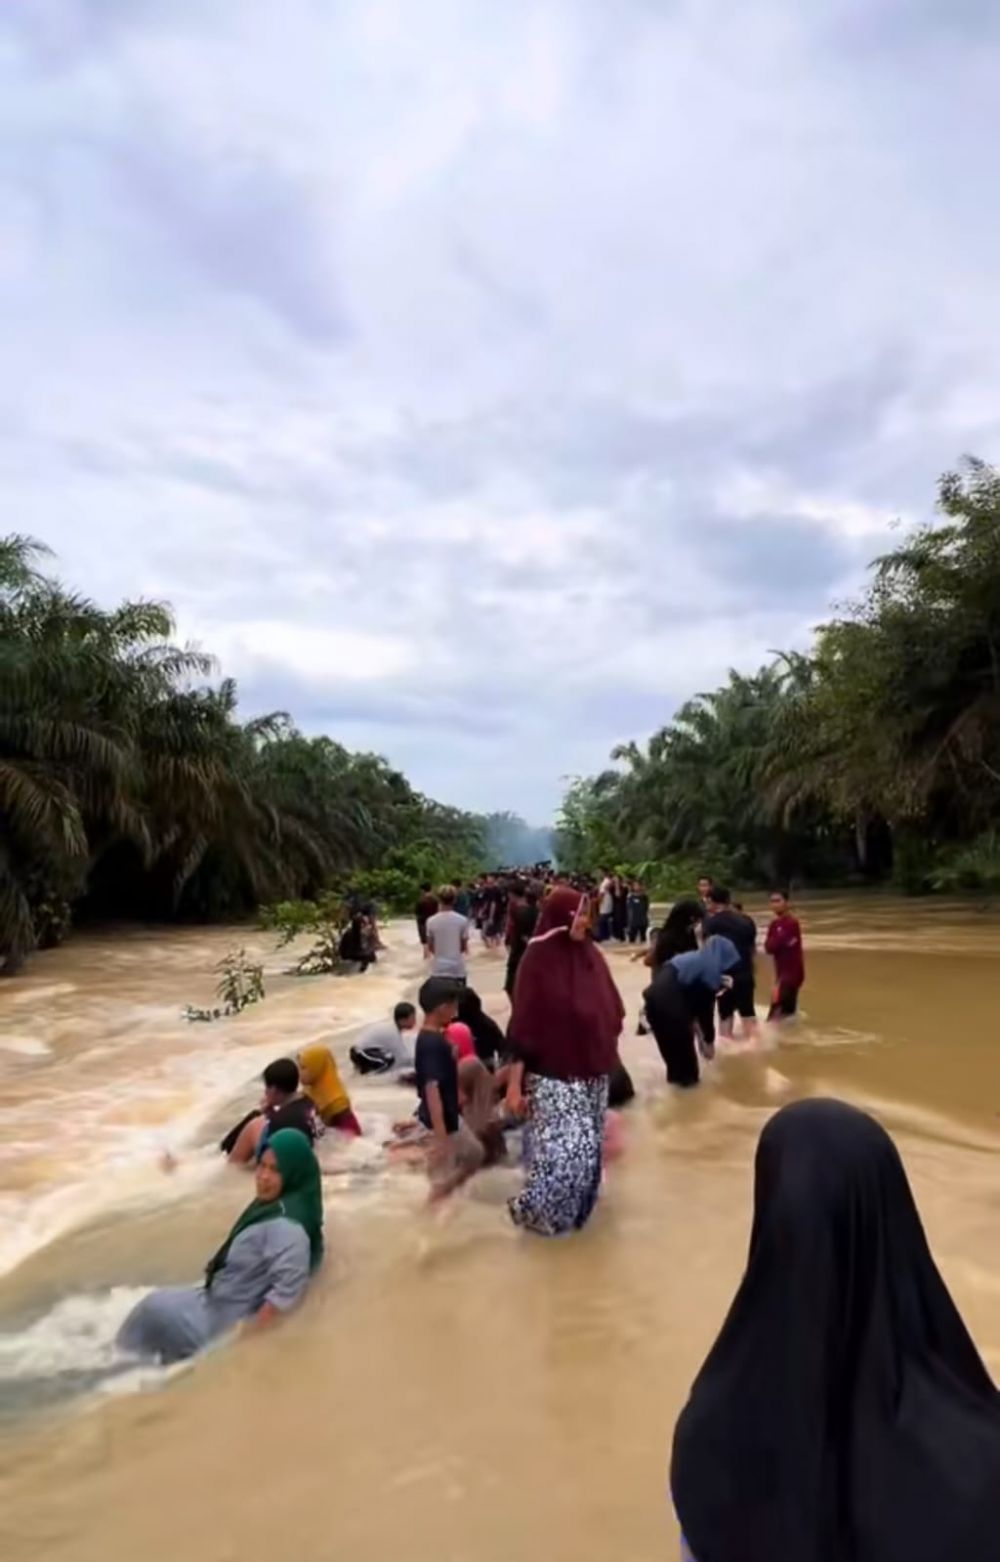 Alih-alih sibuk evakuasi, momen banjir di Riau ini malah jadi tempat wisata warga sekitar